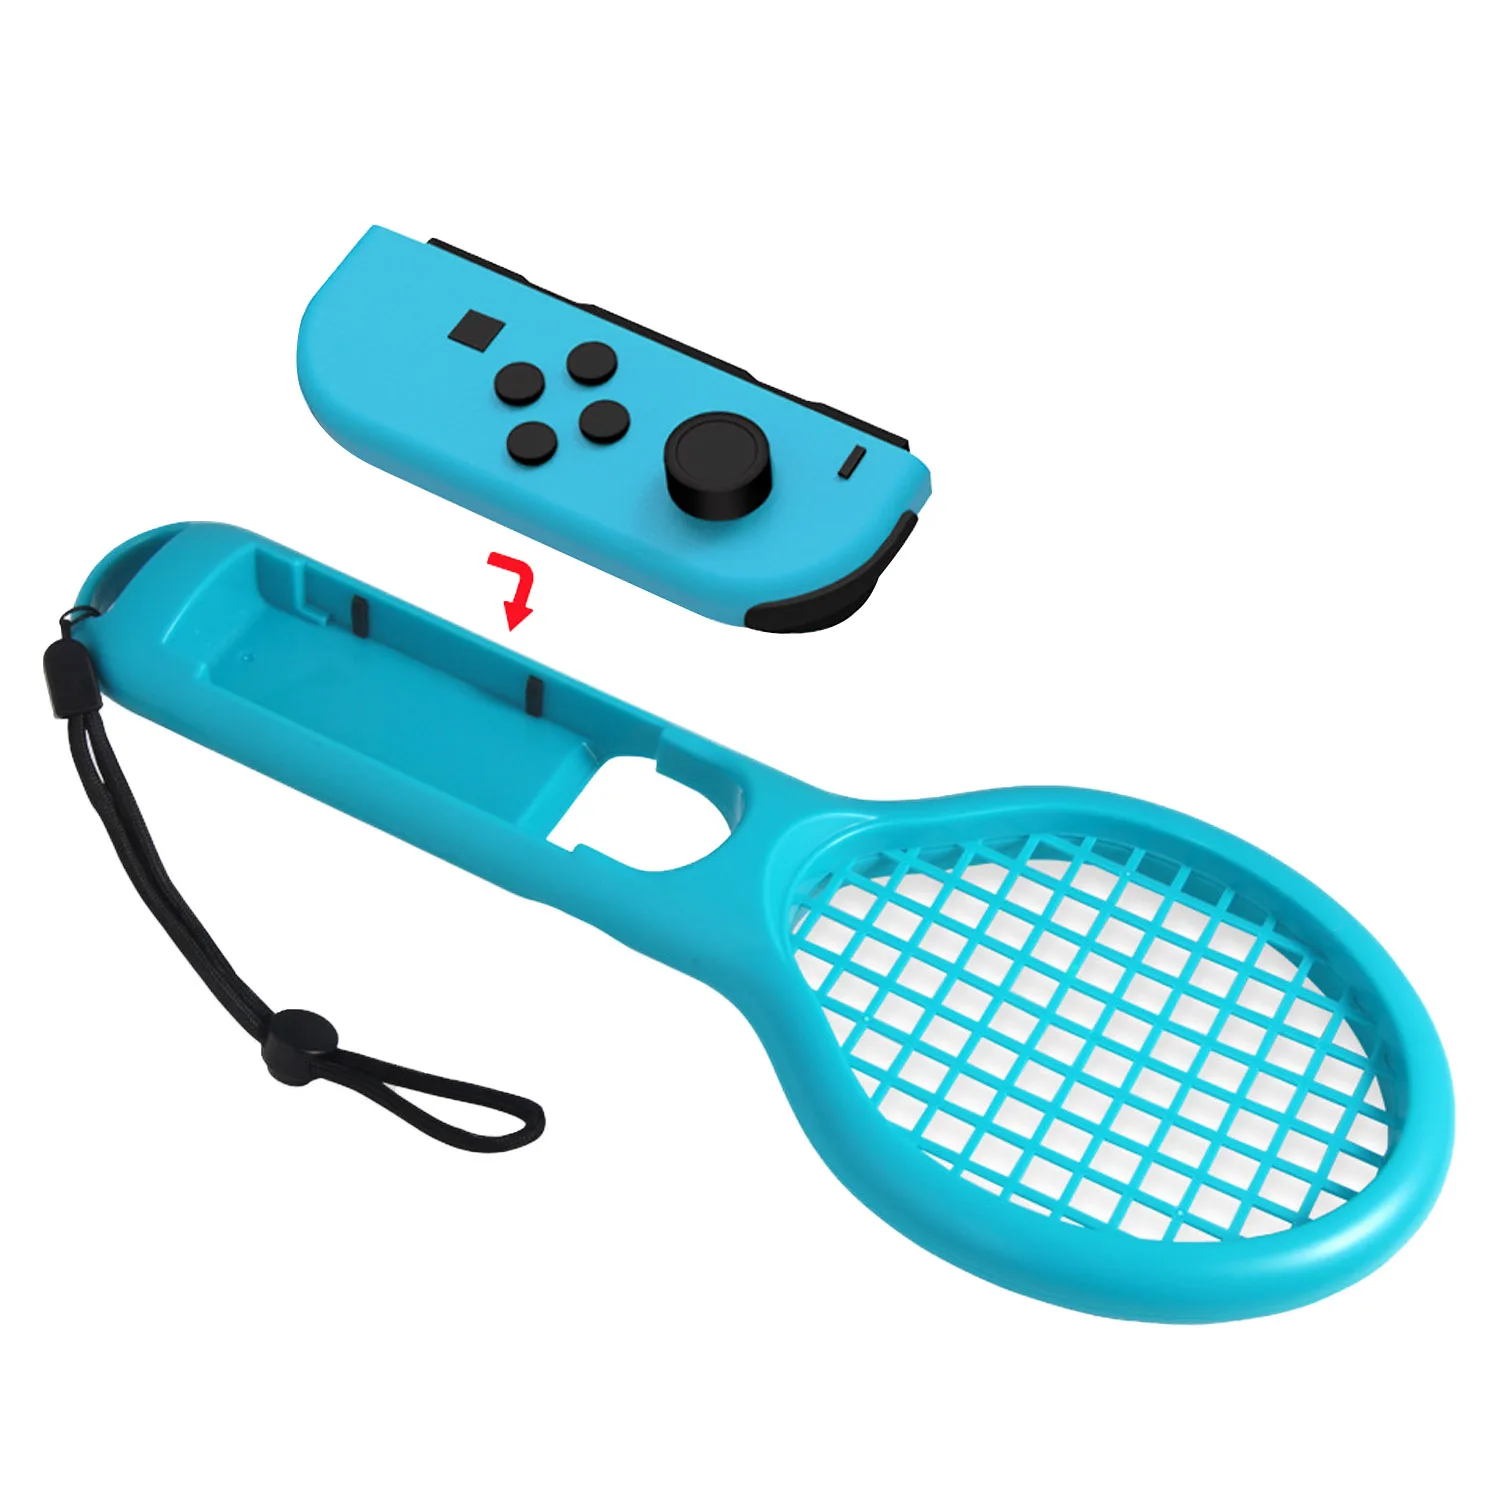 Bevigac новая ручка контроллер левый и правый ABS теннисная ракетка для Nintendo Switch NS JOY-CON Ma rio Tennis ACE игровой плеер